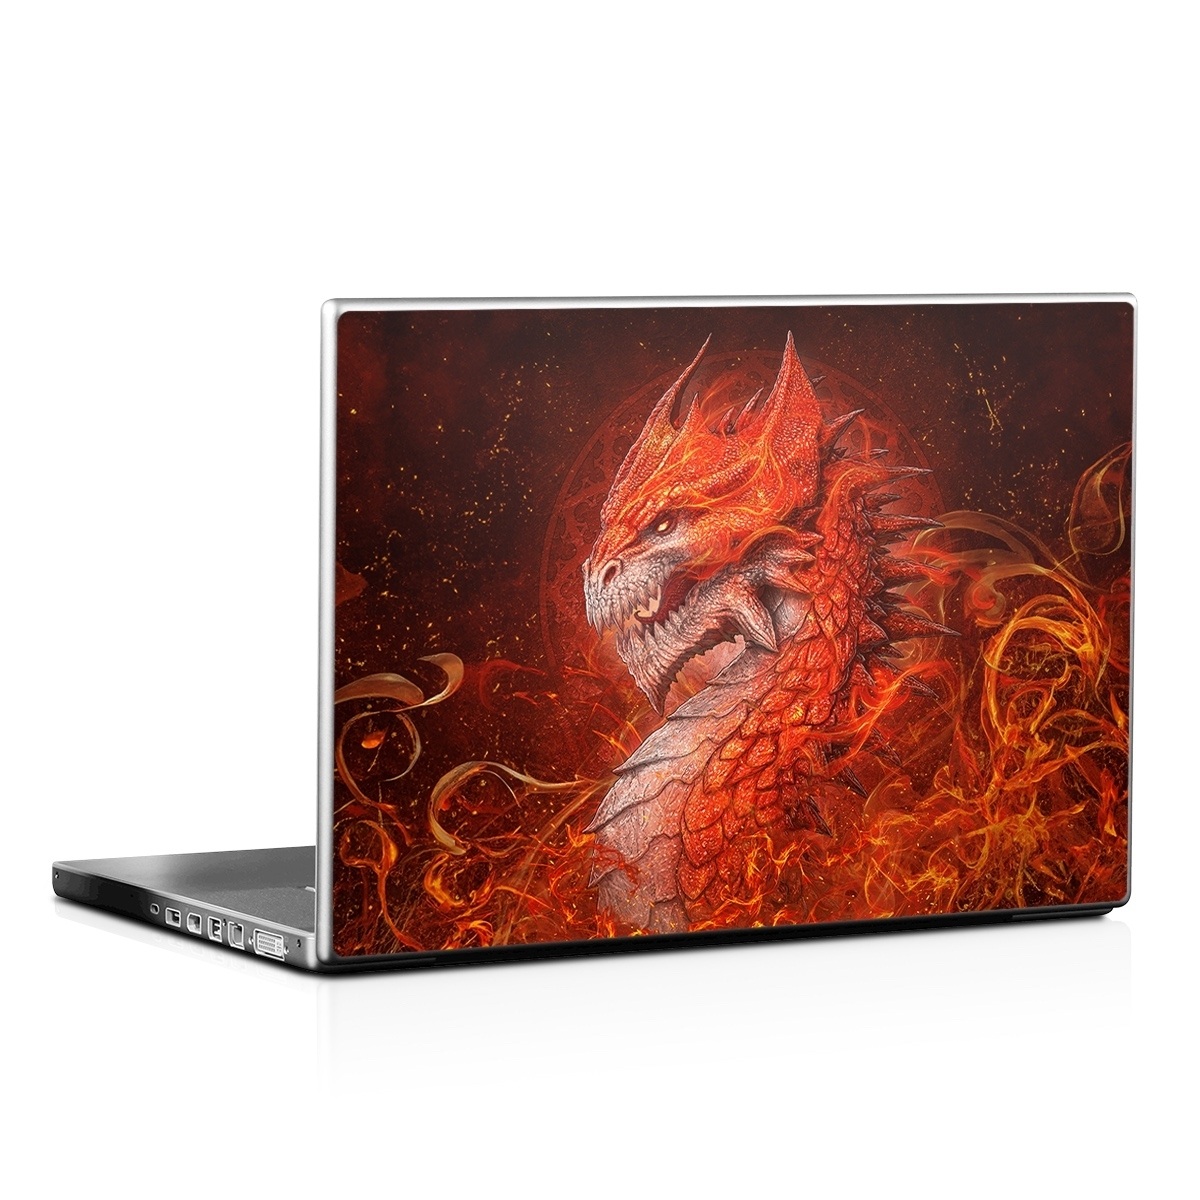 Laptop Skin - Flame Dragon (Image 1)